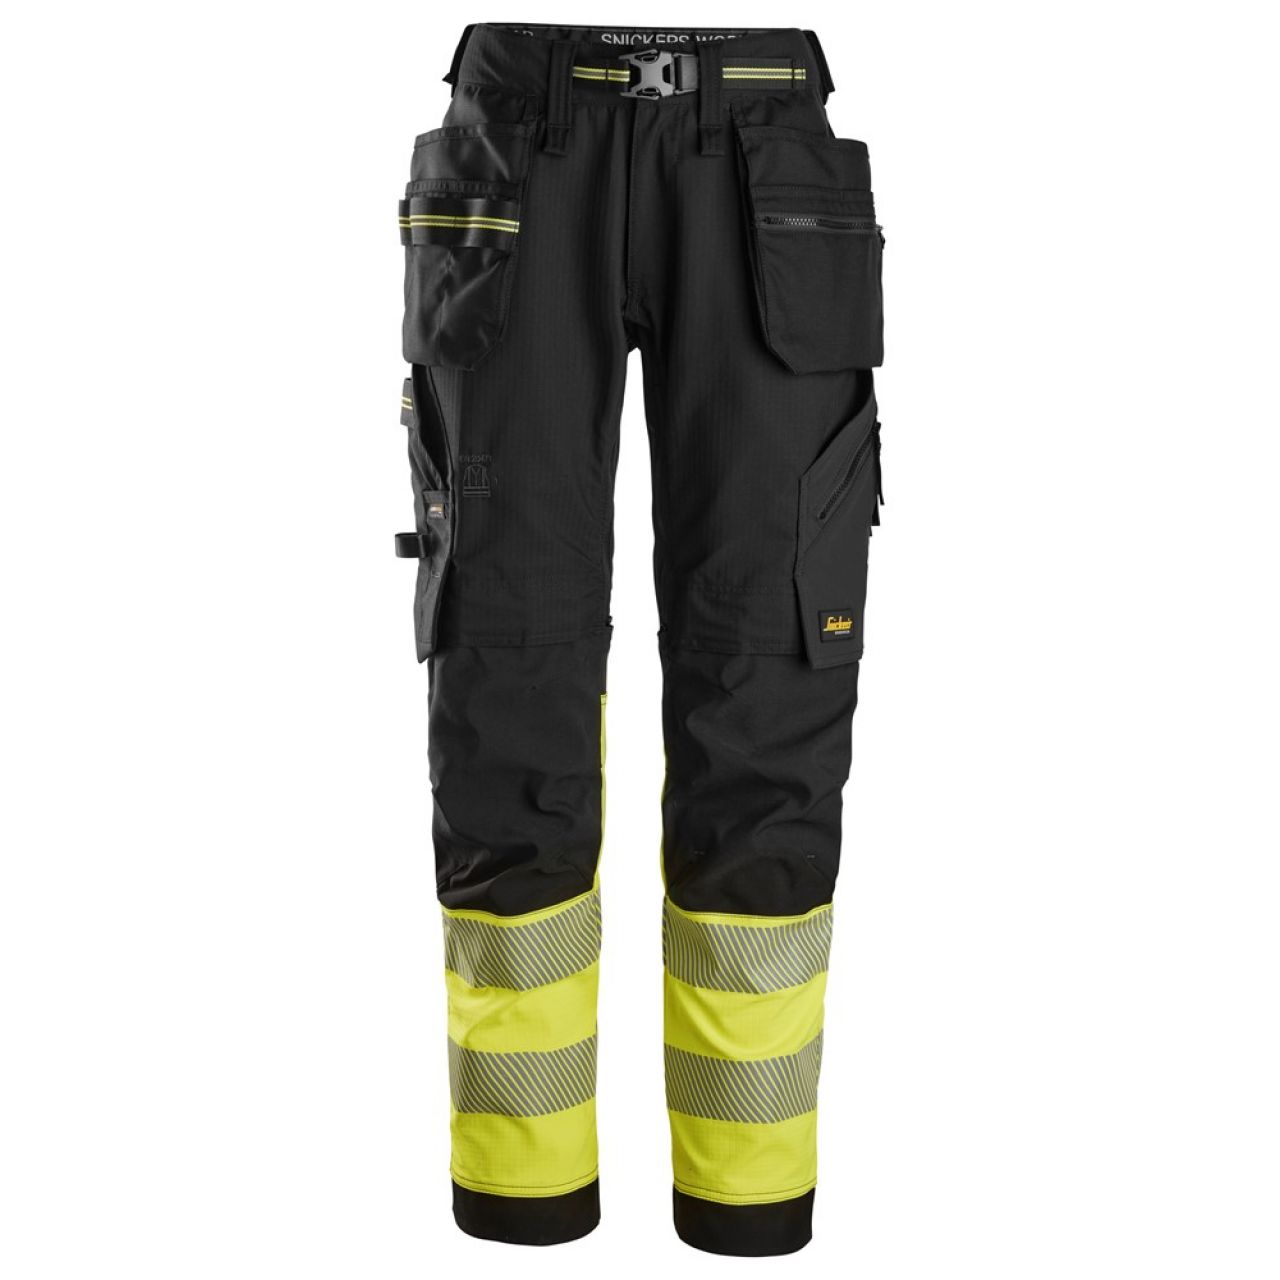 6934 Pantalones largos de trabajo elásticos de alta visibilidad clase 1 con bolsillos flotantes negro-amarillo talla 156